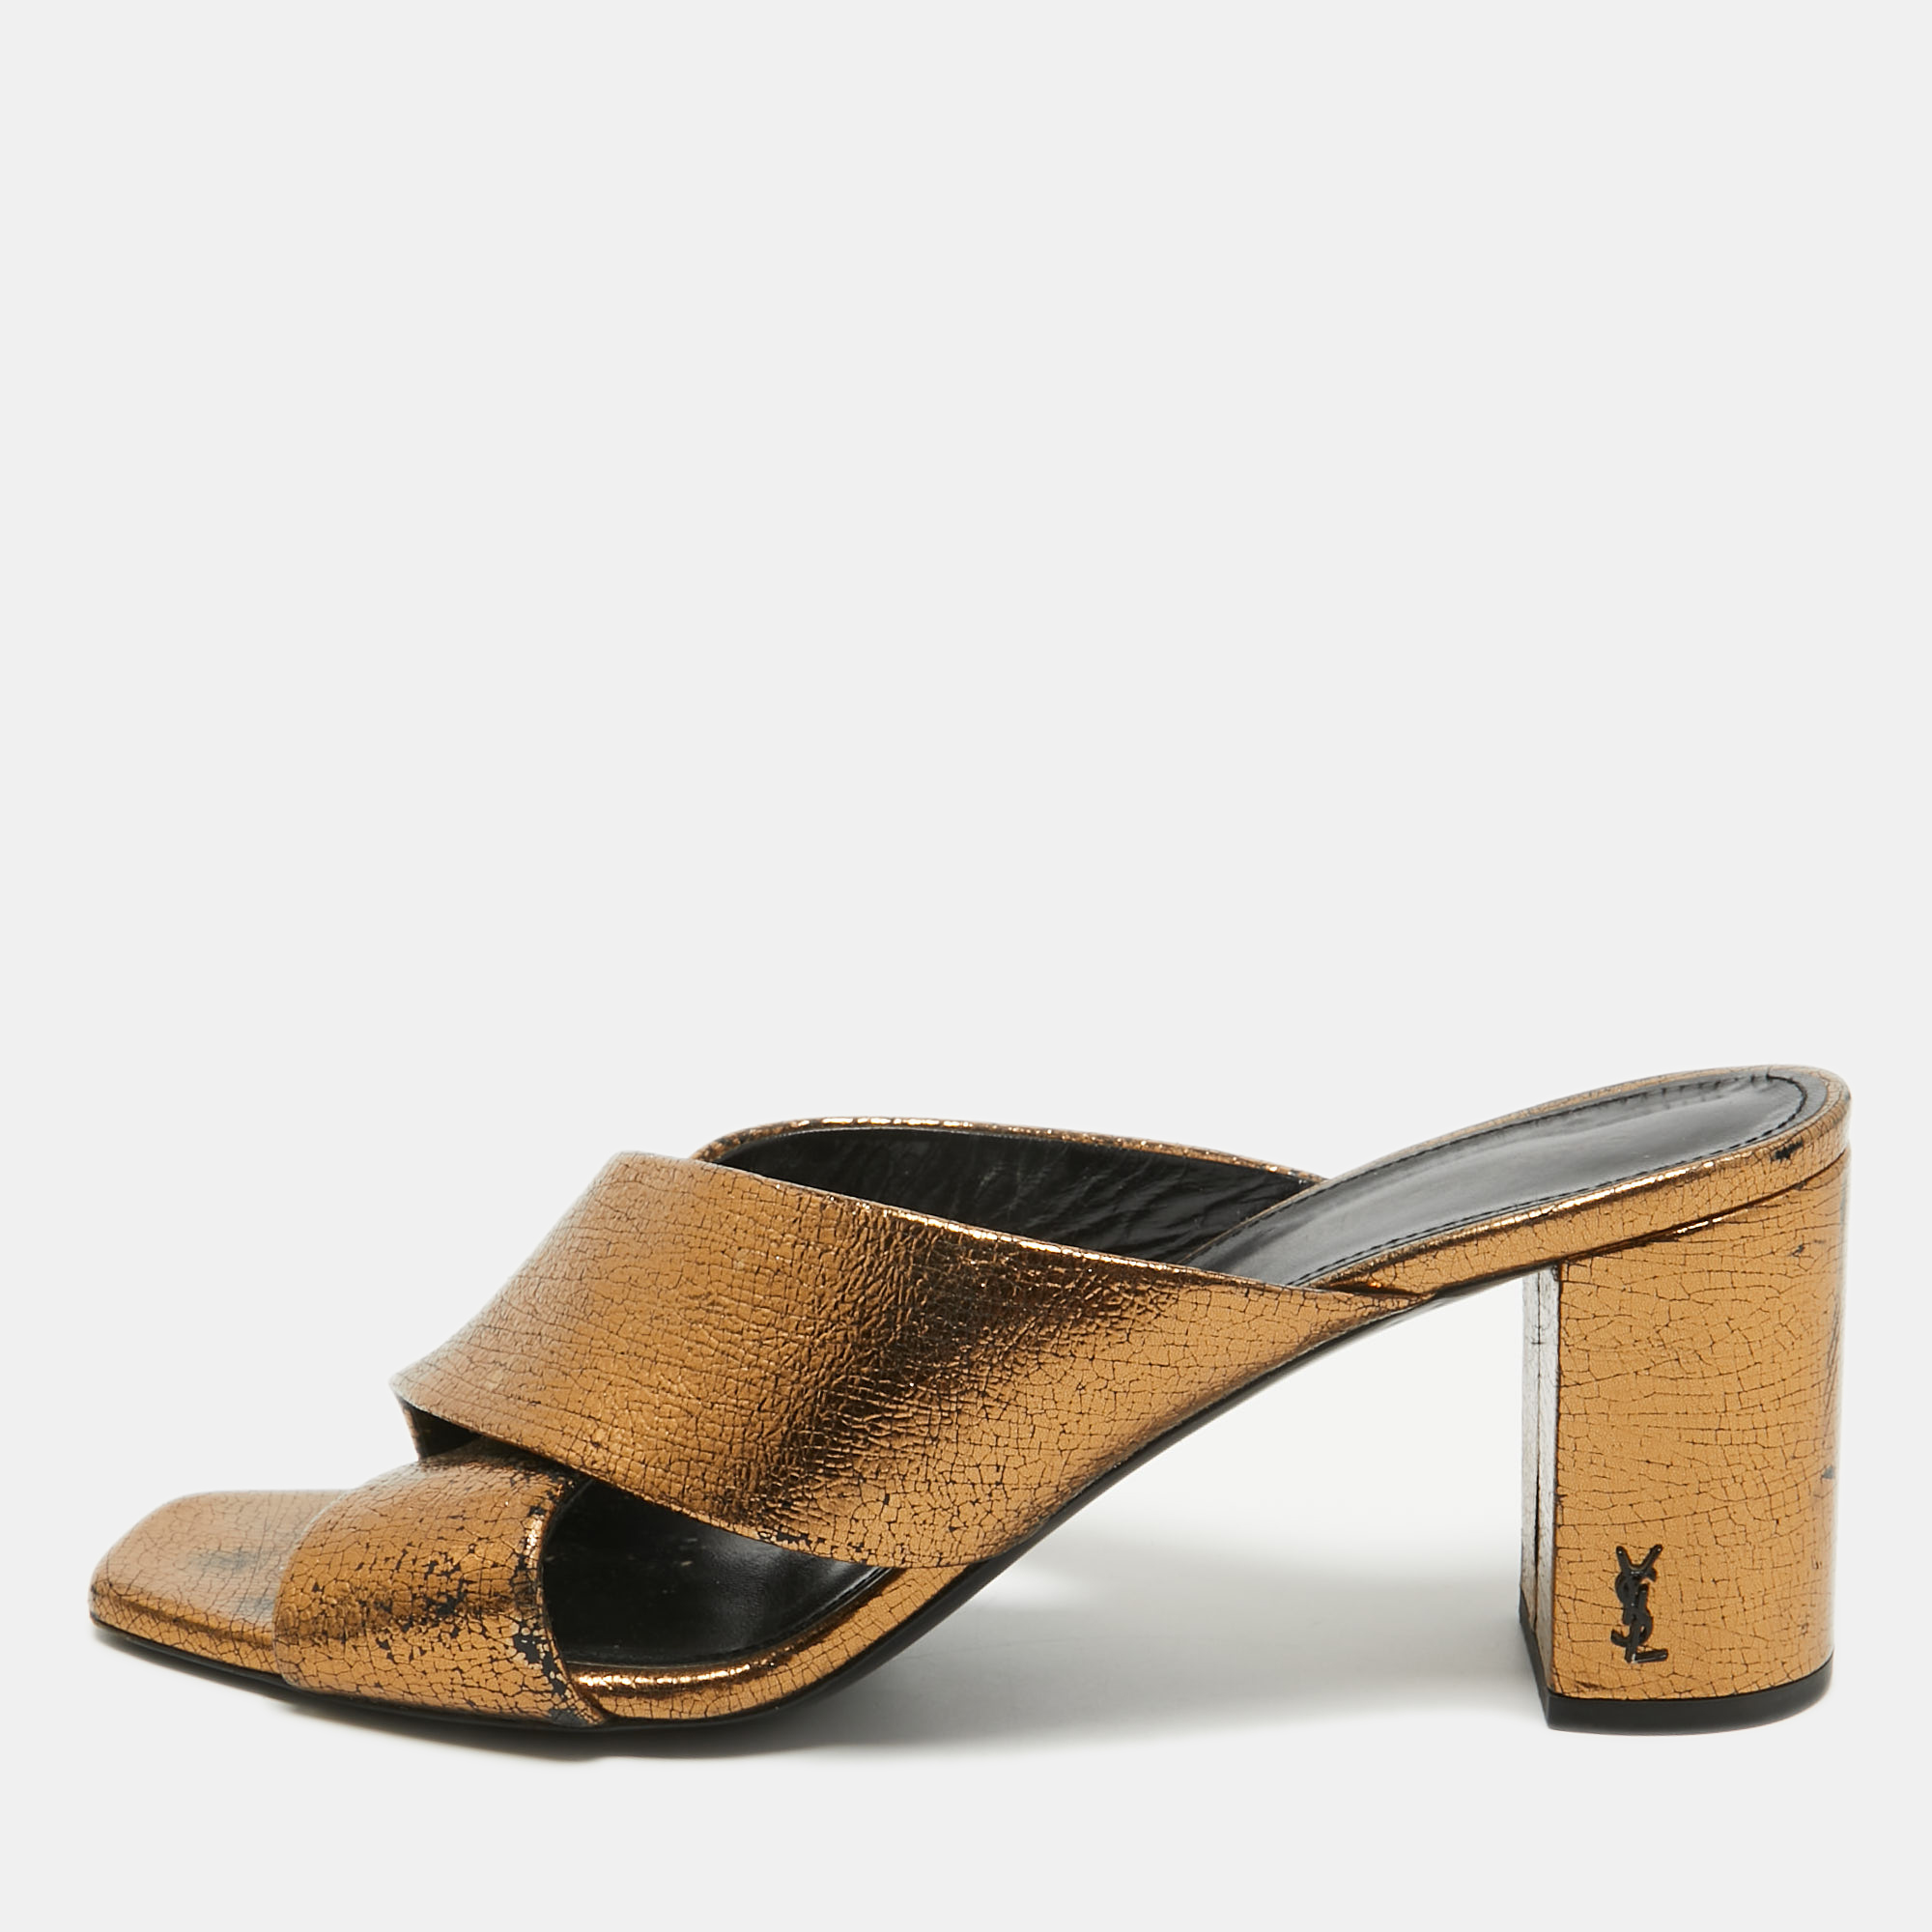 Saint laurent paris saint laurent metallic leather loulou slide sandals size 39